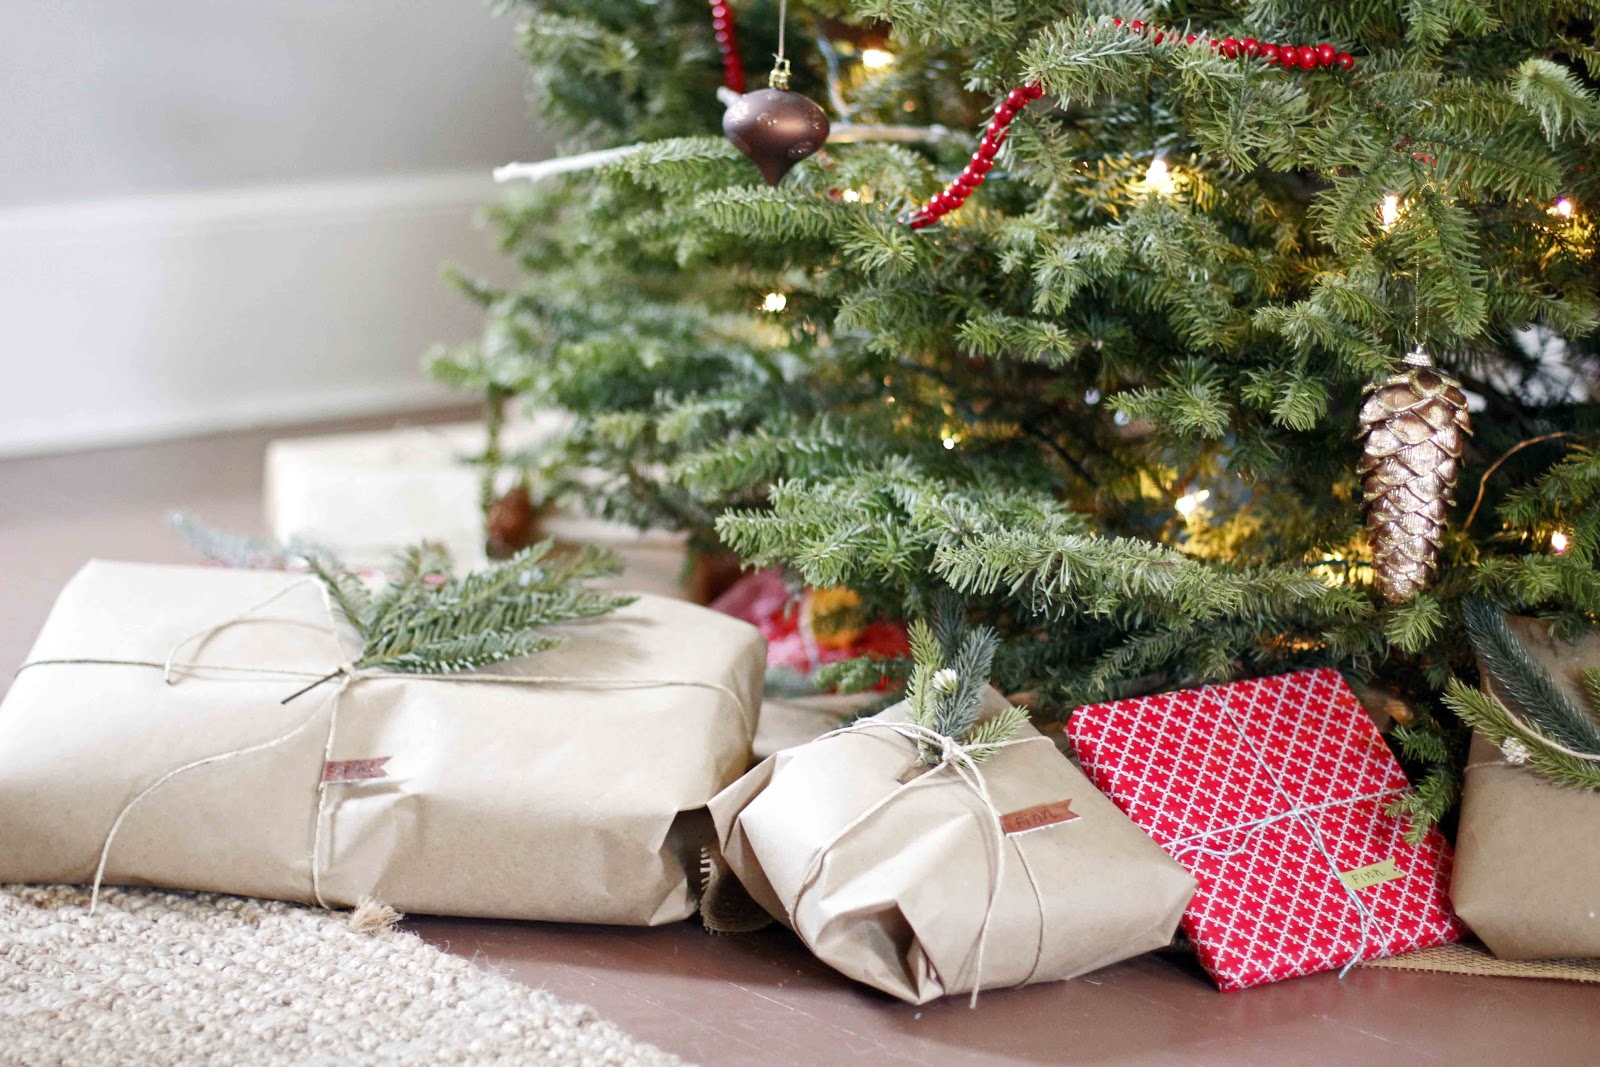 5 идей декора и упаковки подарков с помощью крафт-бумаги